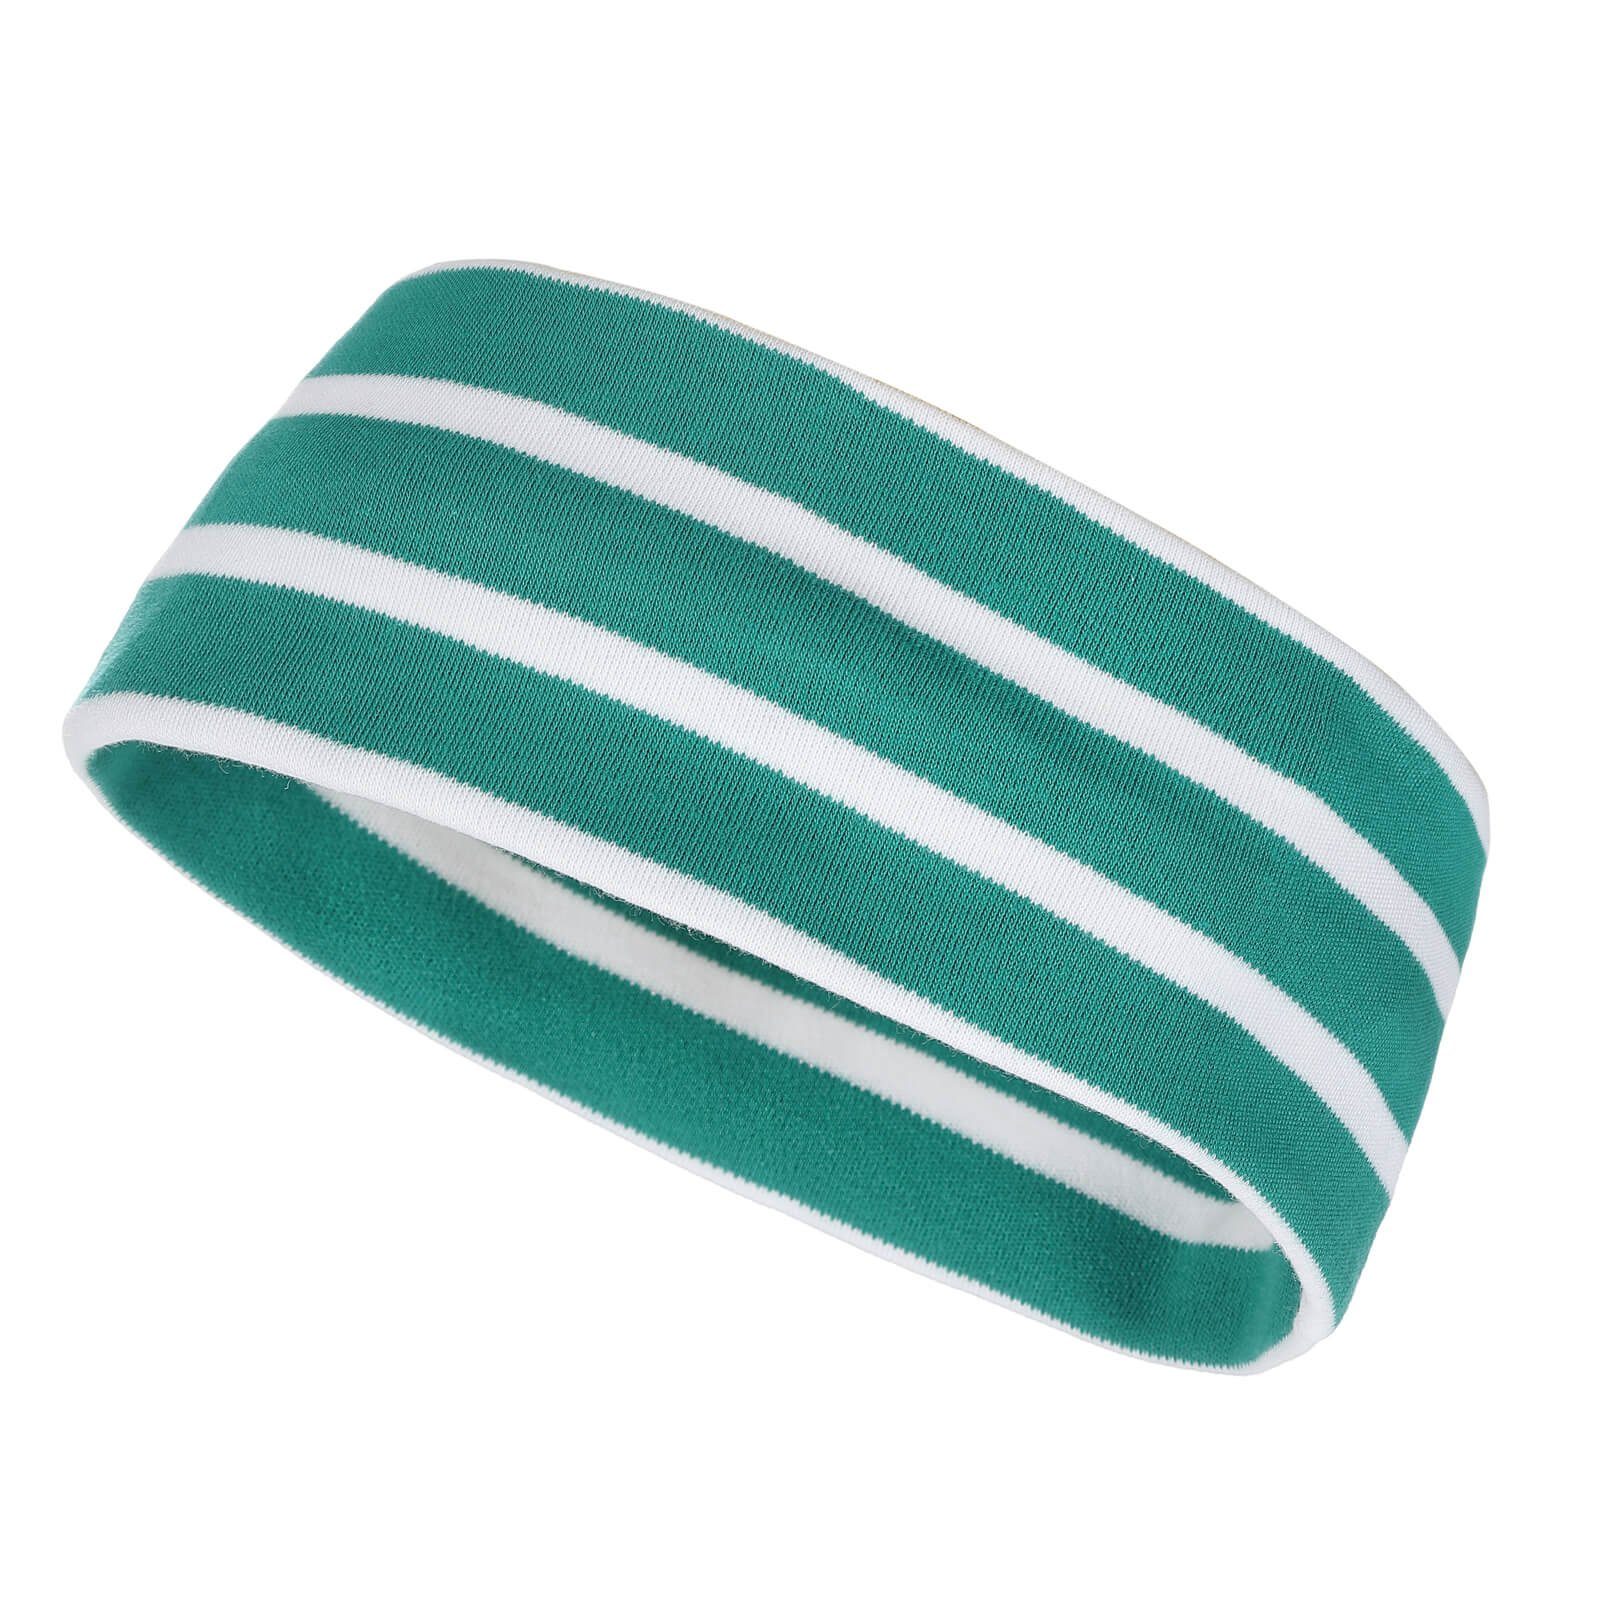 modAS Stirnband Unisex Kopfband Maritim für Kinder und Erwachsene zweilagig Baumwolle (63) smaragd / weiß